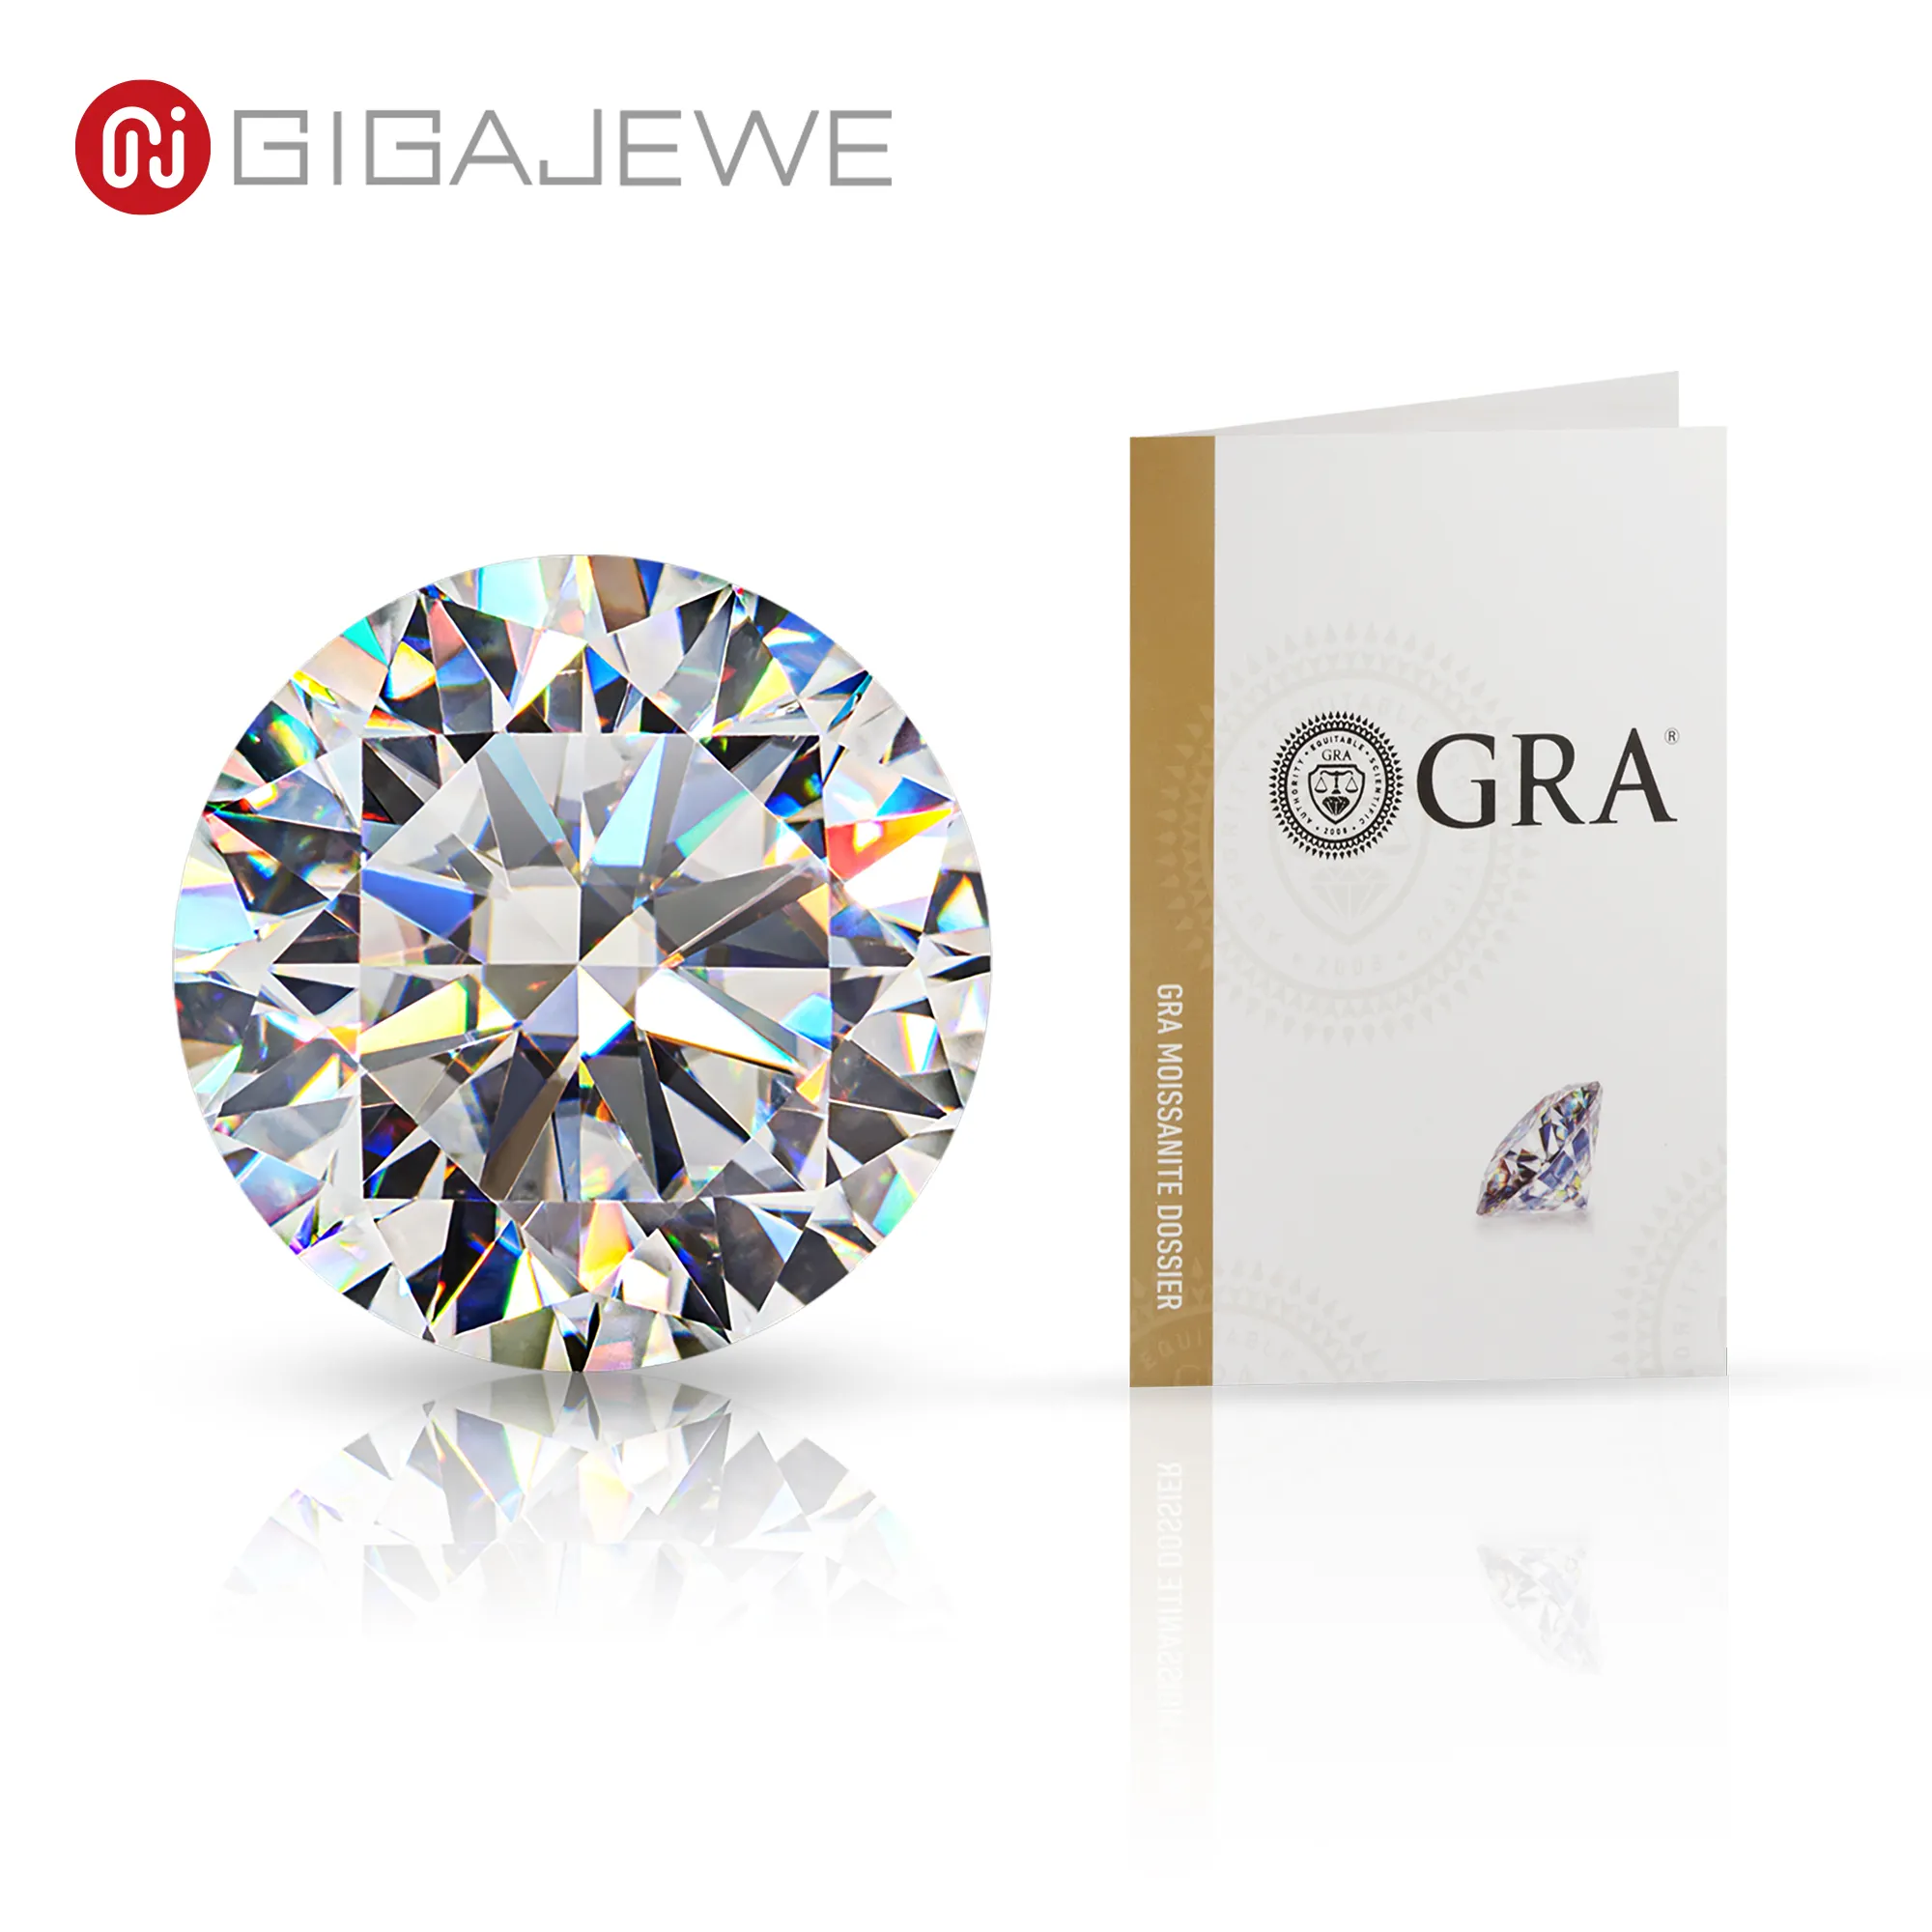 Gigajewe Groothandel Losse Moissanite Diamant Met Gra Certificaat Wit Def Kleur Vvs1 Duidelijkheid Voor Sieraden Maken